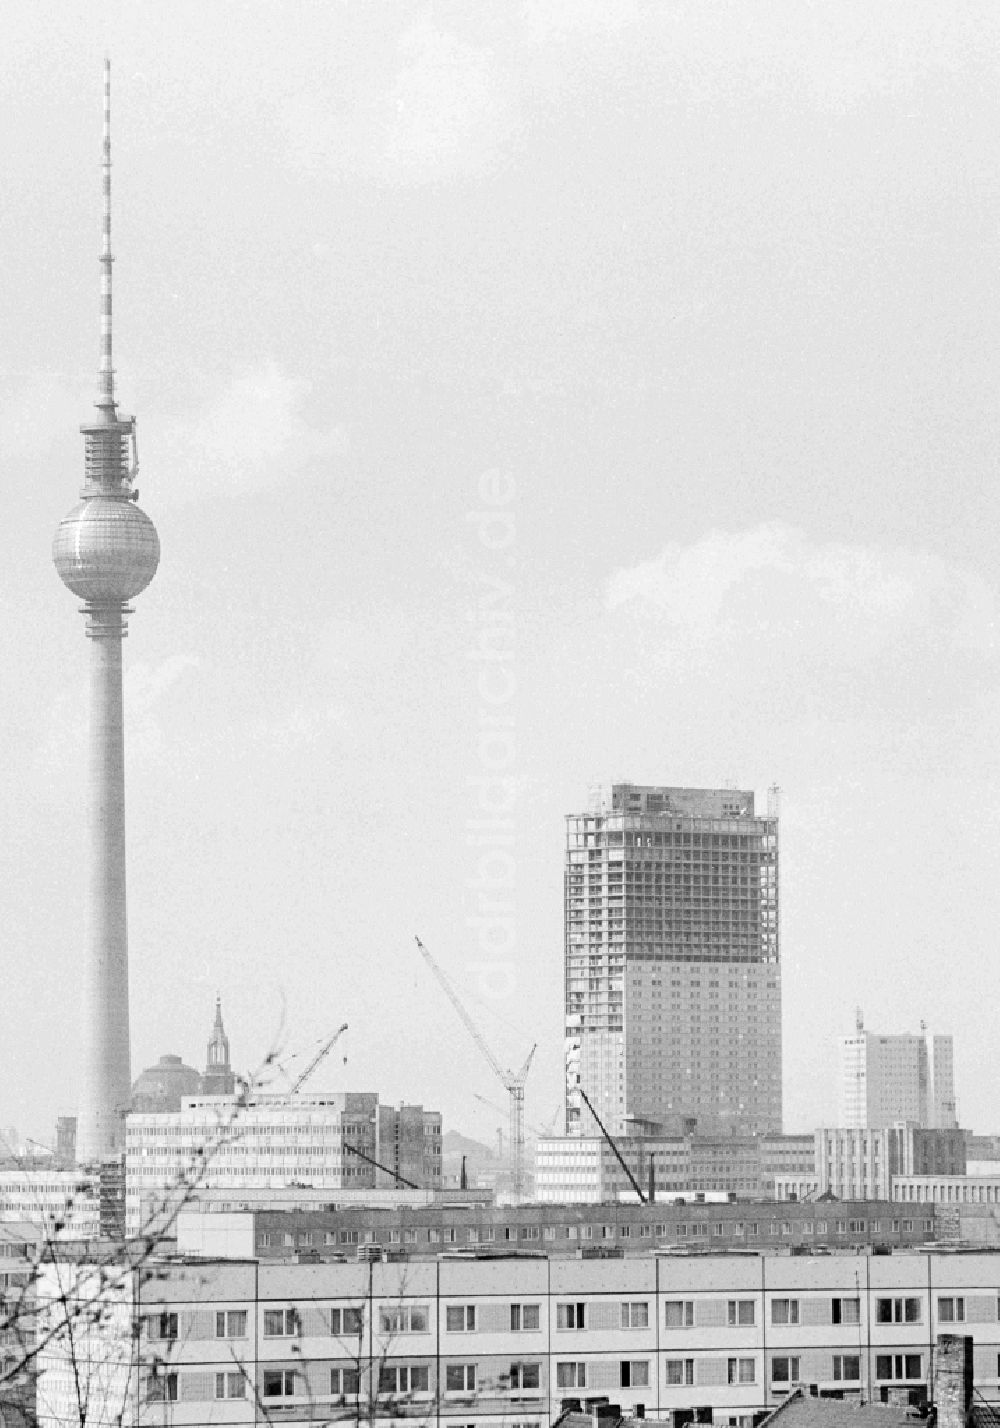 DDR-Bildarchiv: Berlin - Errichtung des Bettenhochhauses des Interhotel Stadt Berlin in Berlin, der ehemaligen Hauptstadt der DDR, Deutsche Demokratische Republik